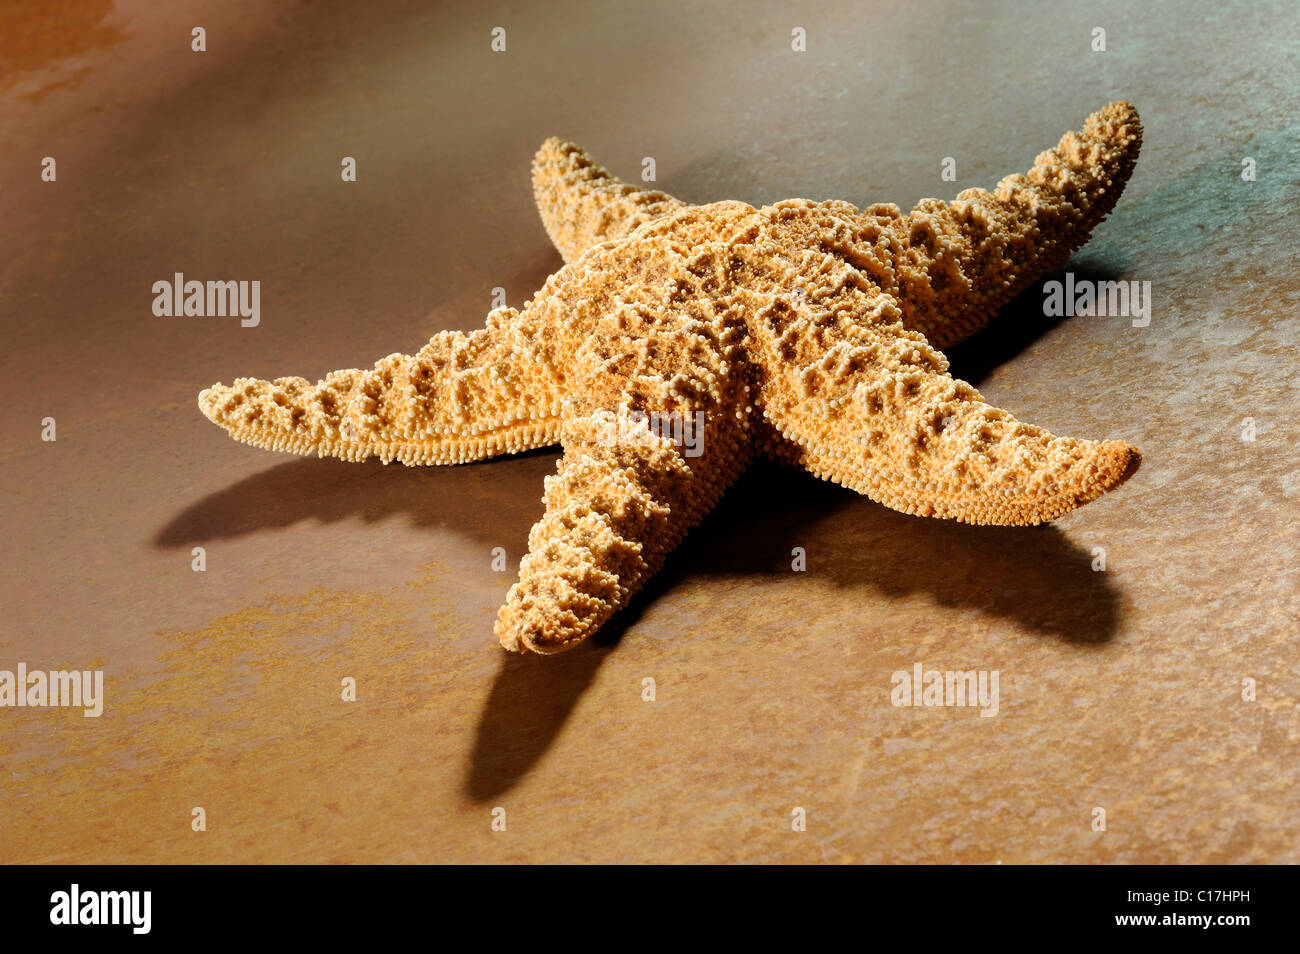 Sea star on rusty metal Stock Photo